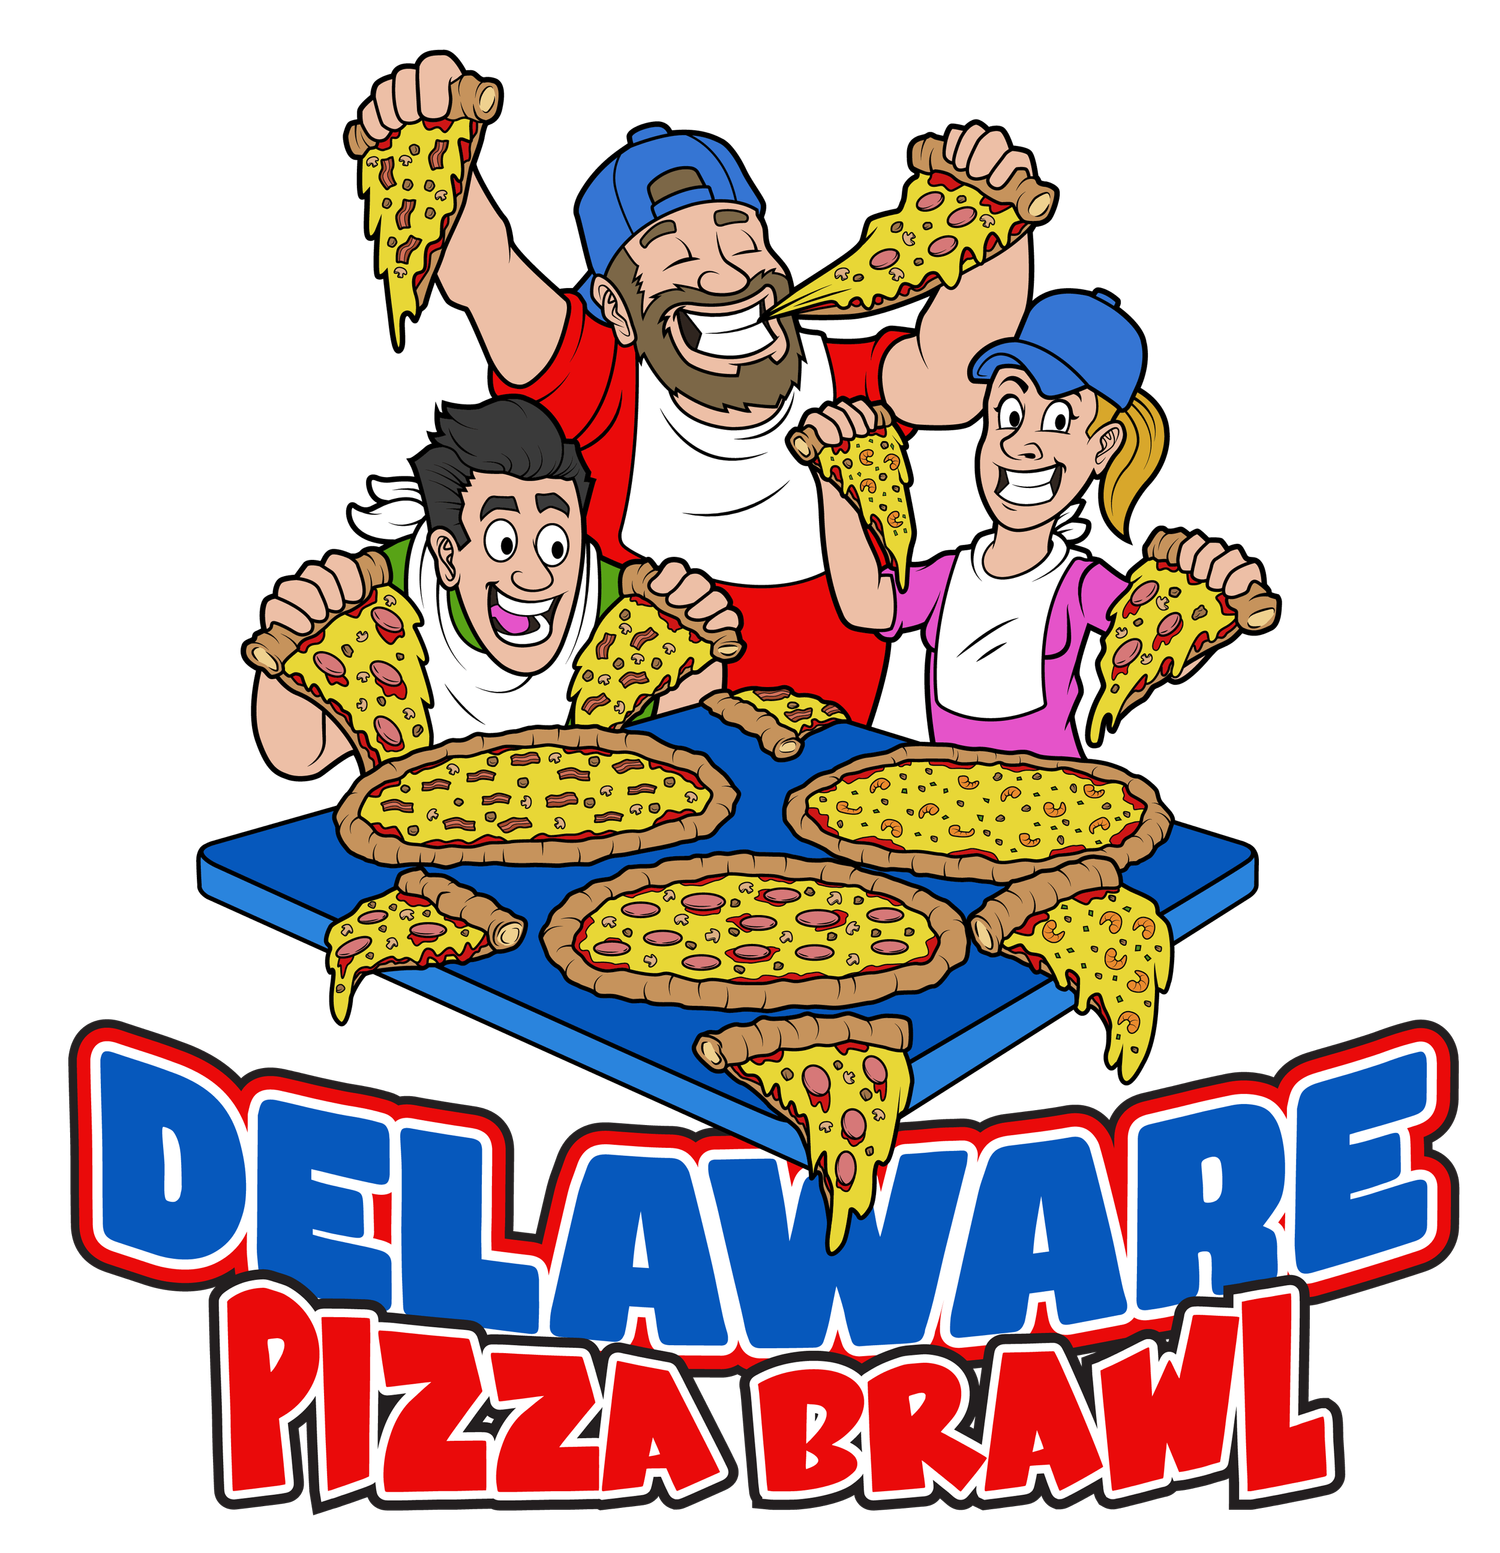 Delaware Pizza Brawl